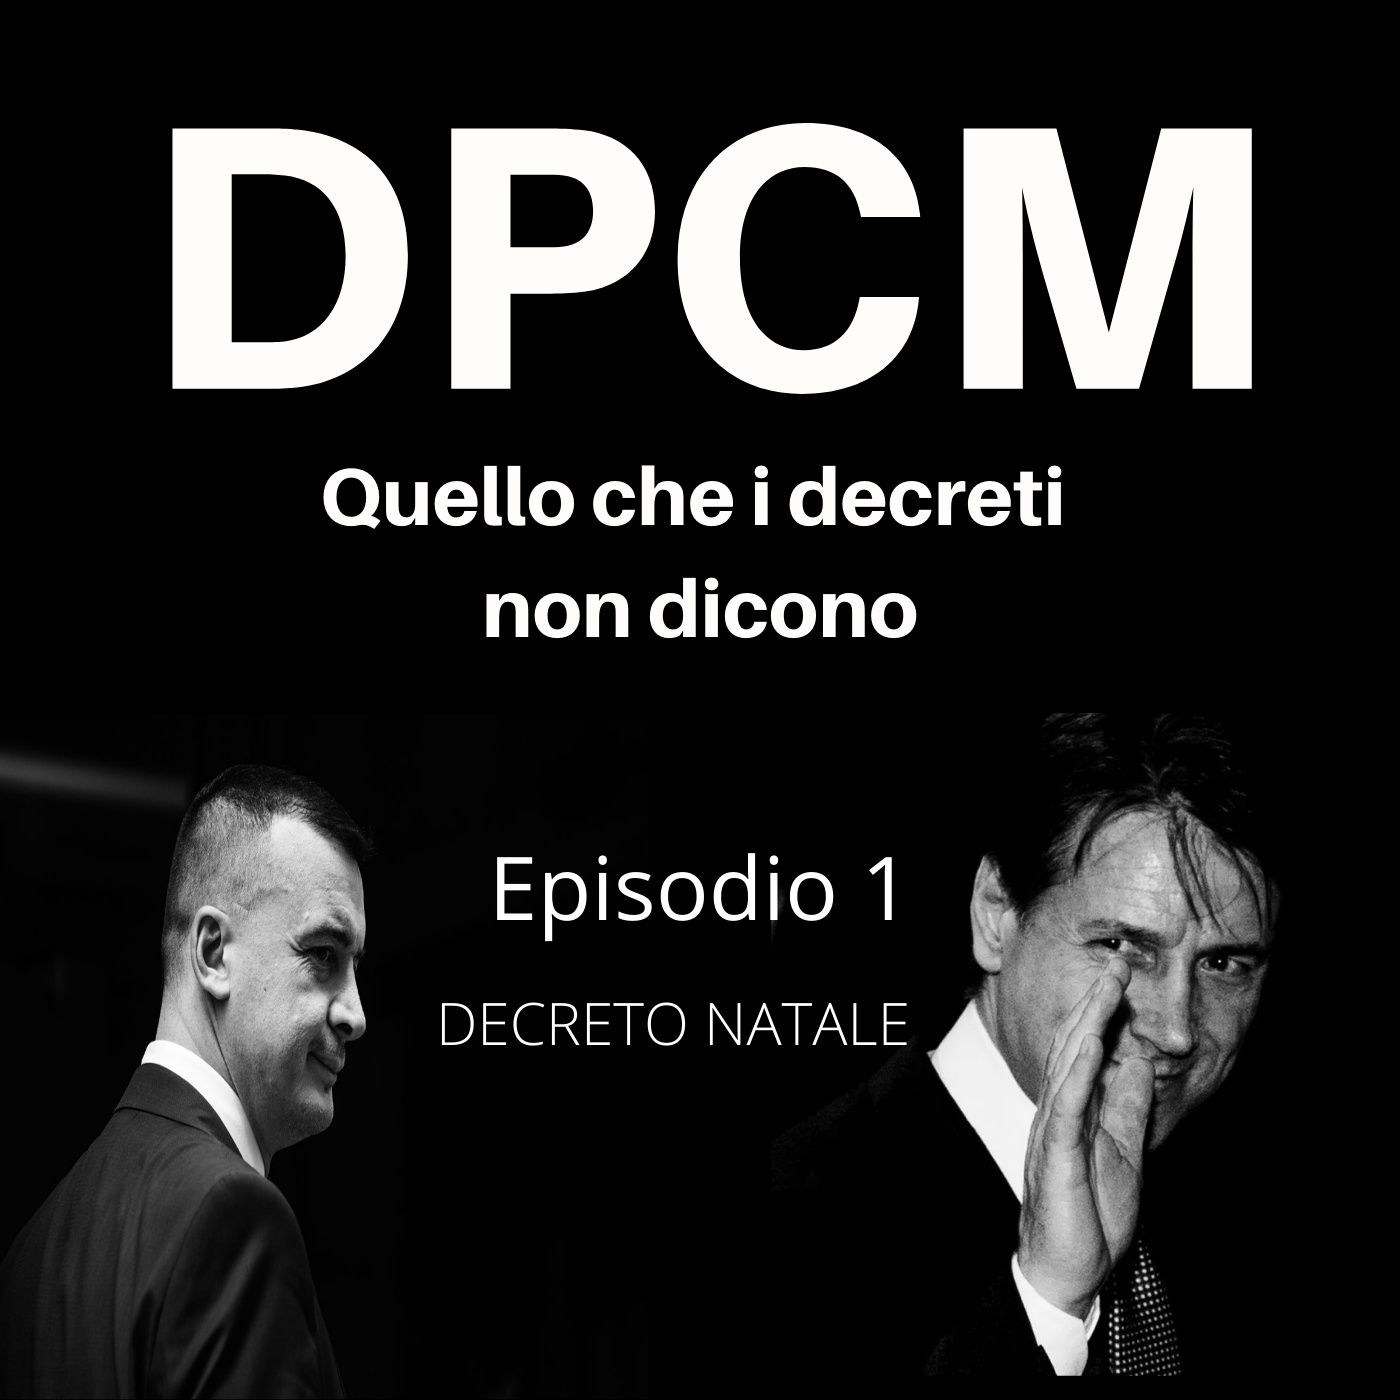 Decreto Natale - Episodio 1 - DPCM Podcast